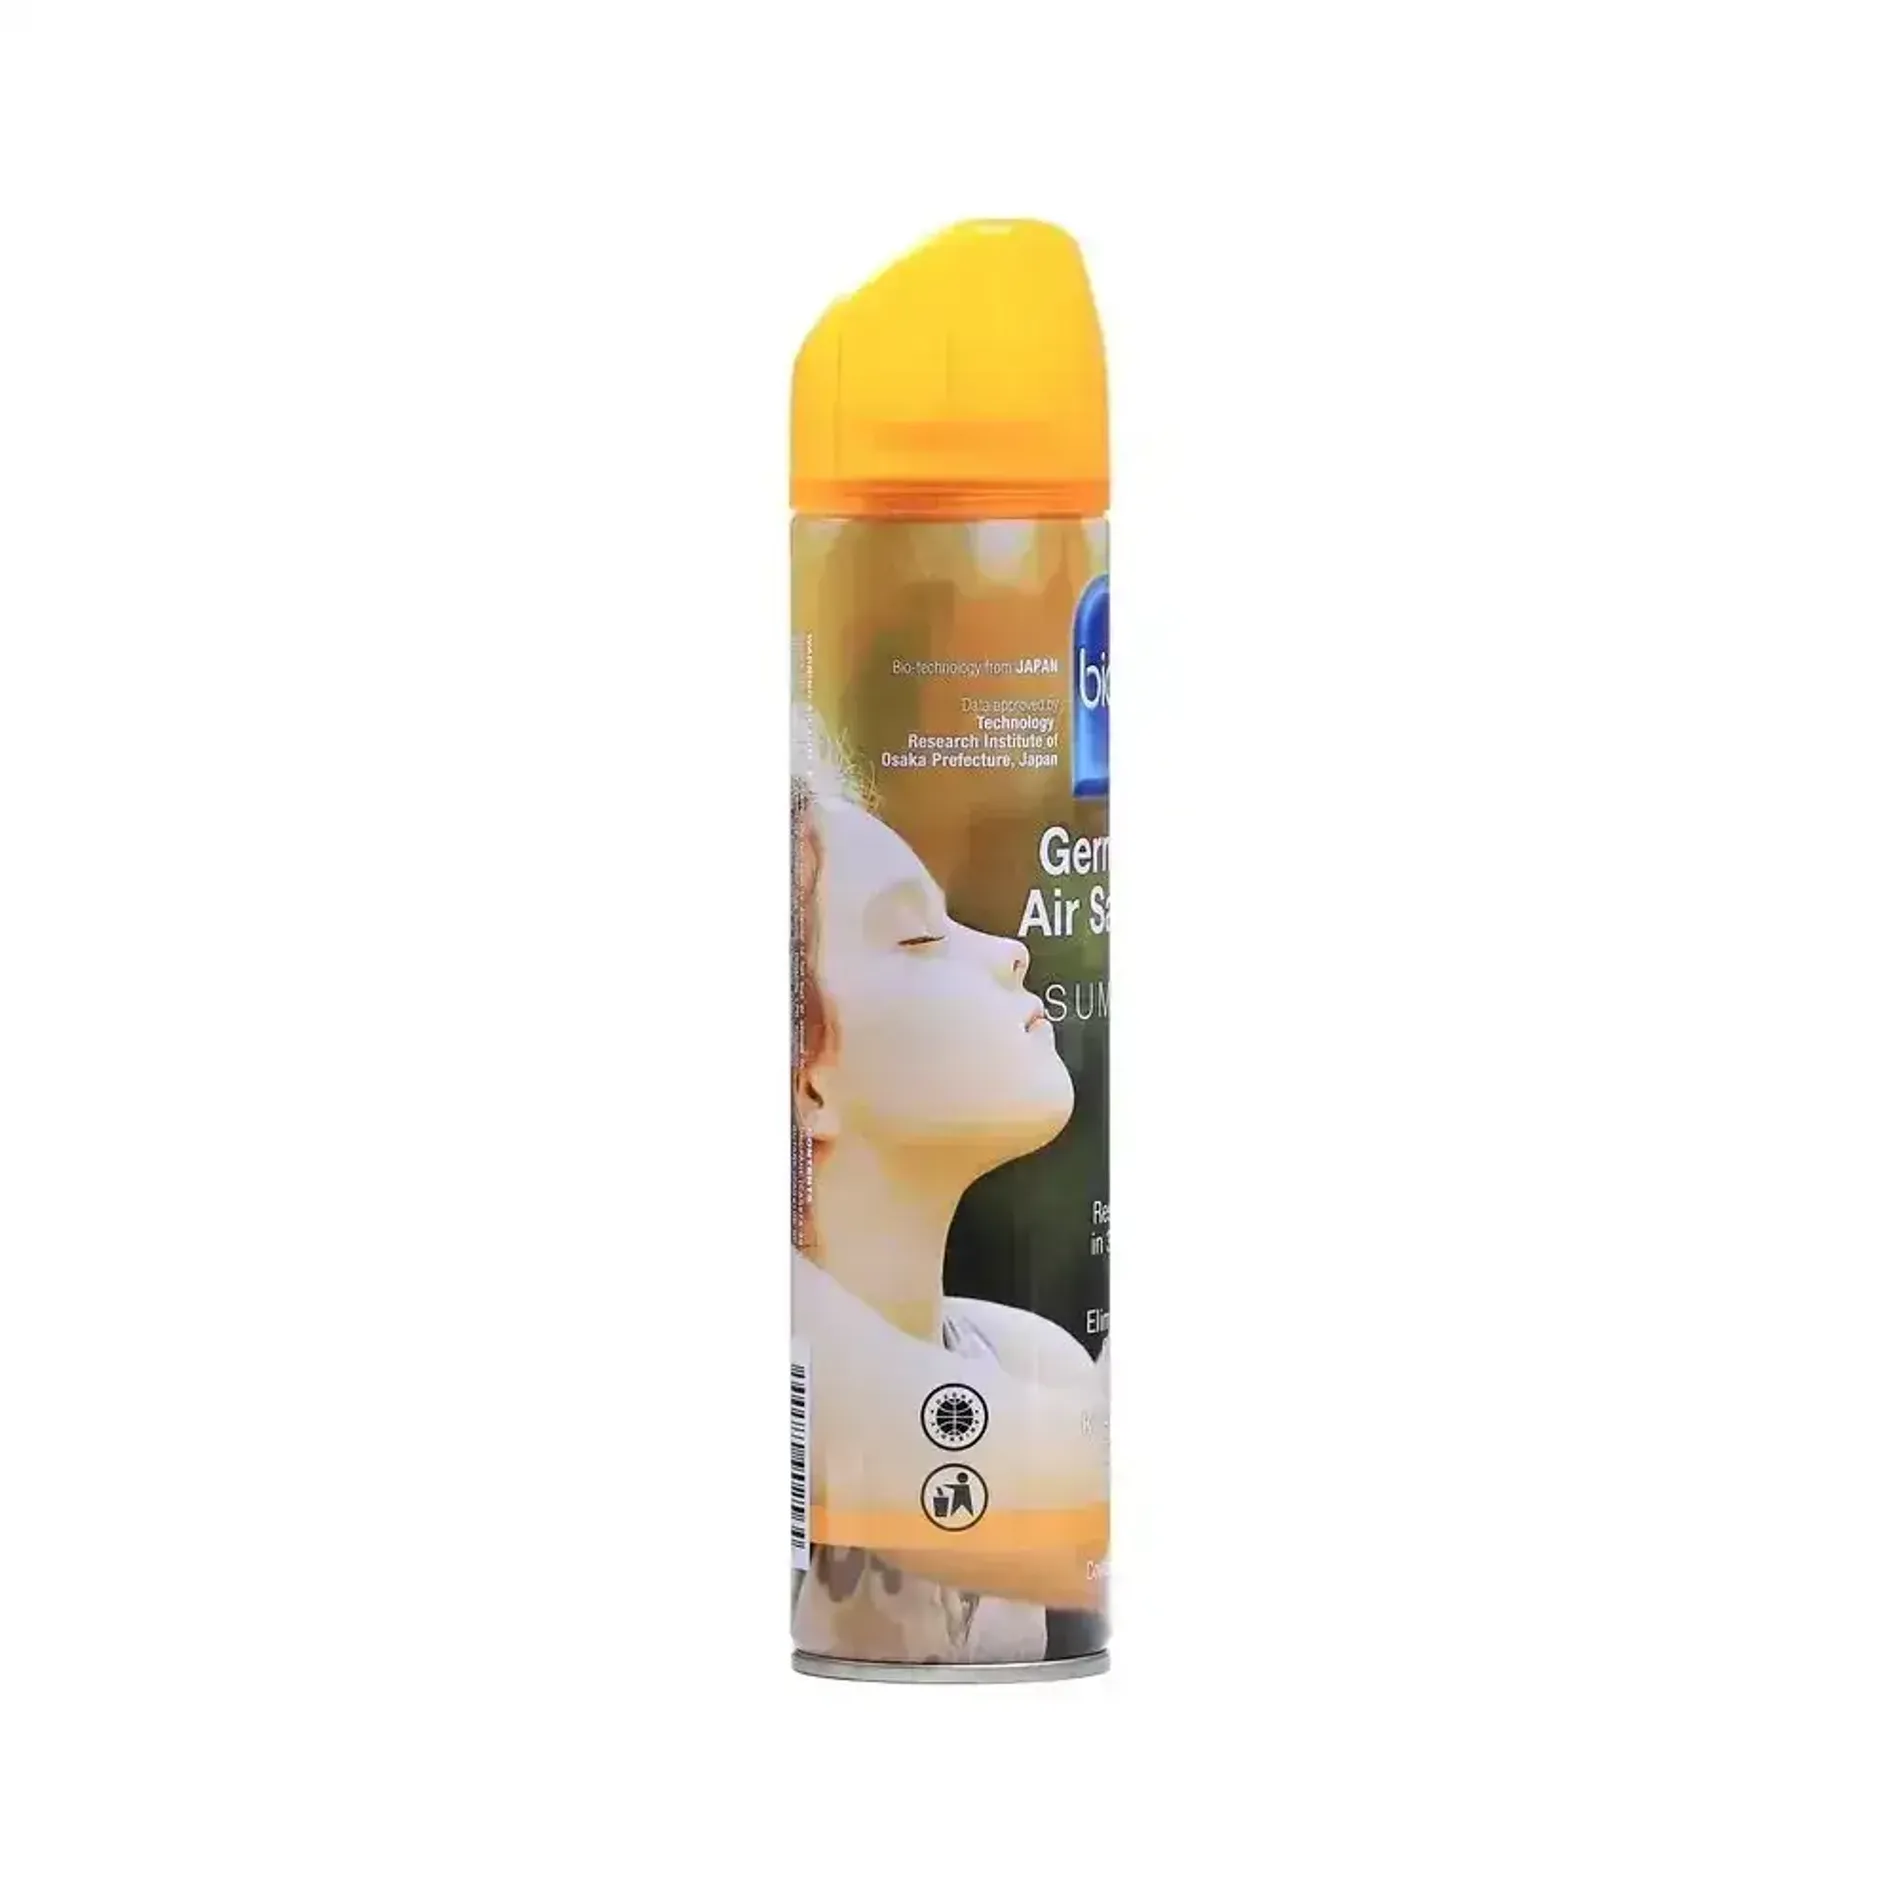 chai-xit-khu-mui-lam-sach-khong-khi-bioion-germ-free-air-sanitizer-300ml-1